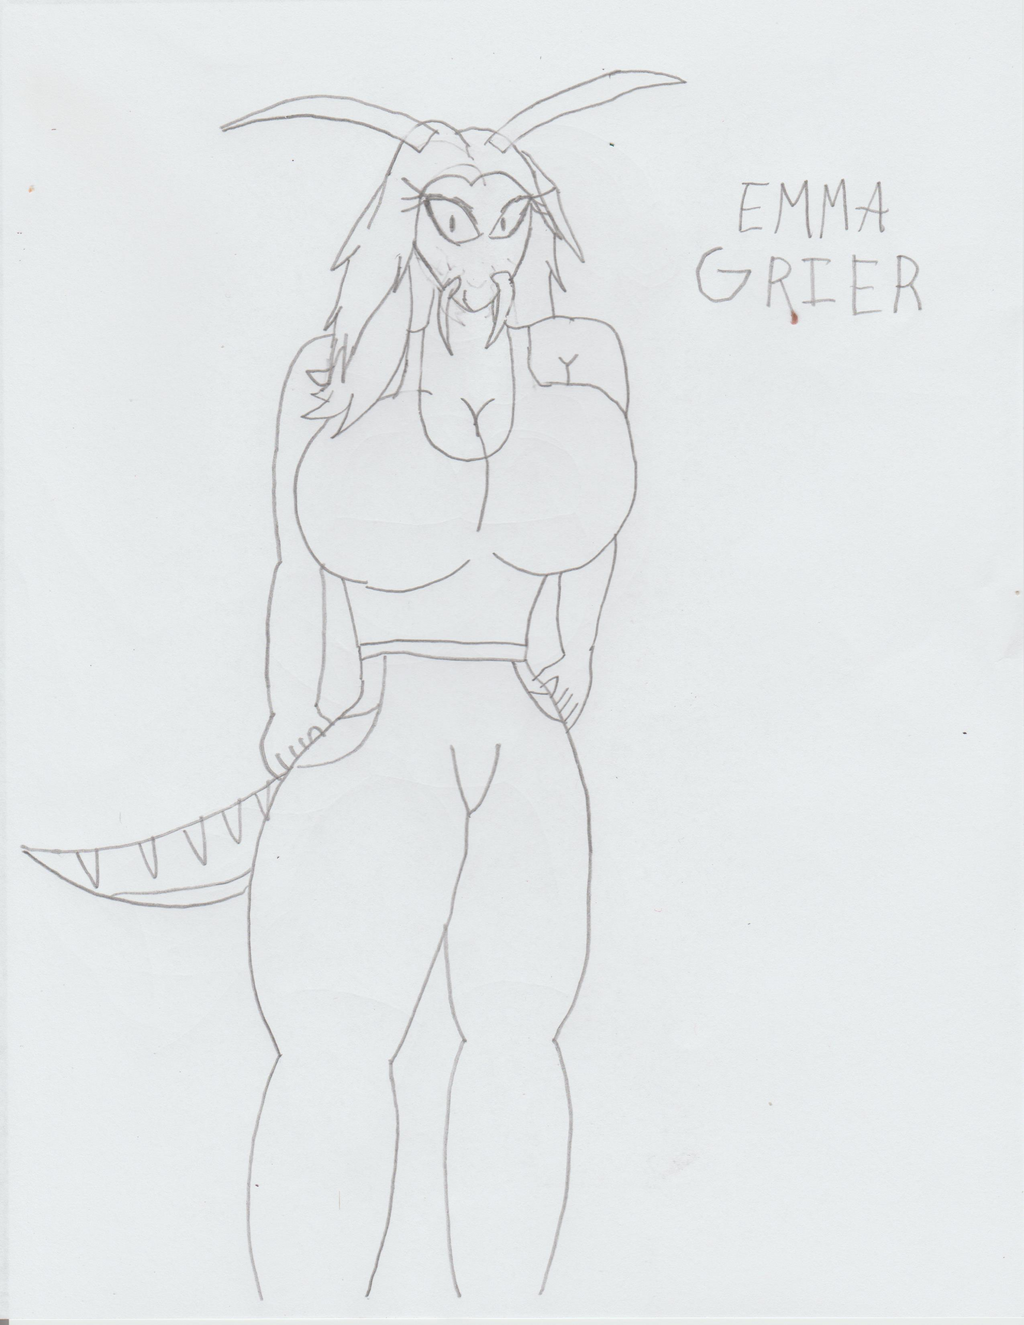 [Draft] - Emma Grier